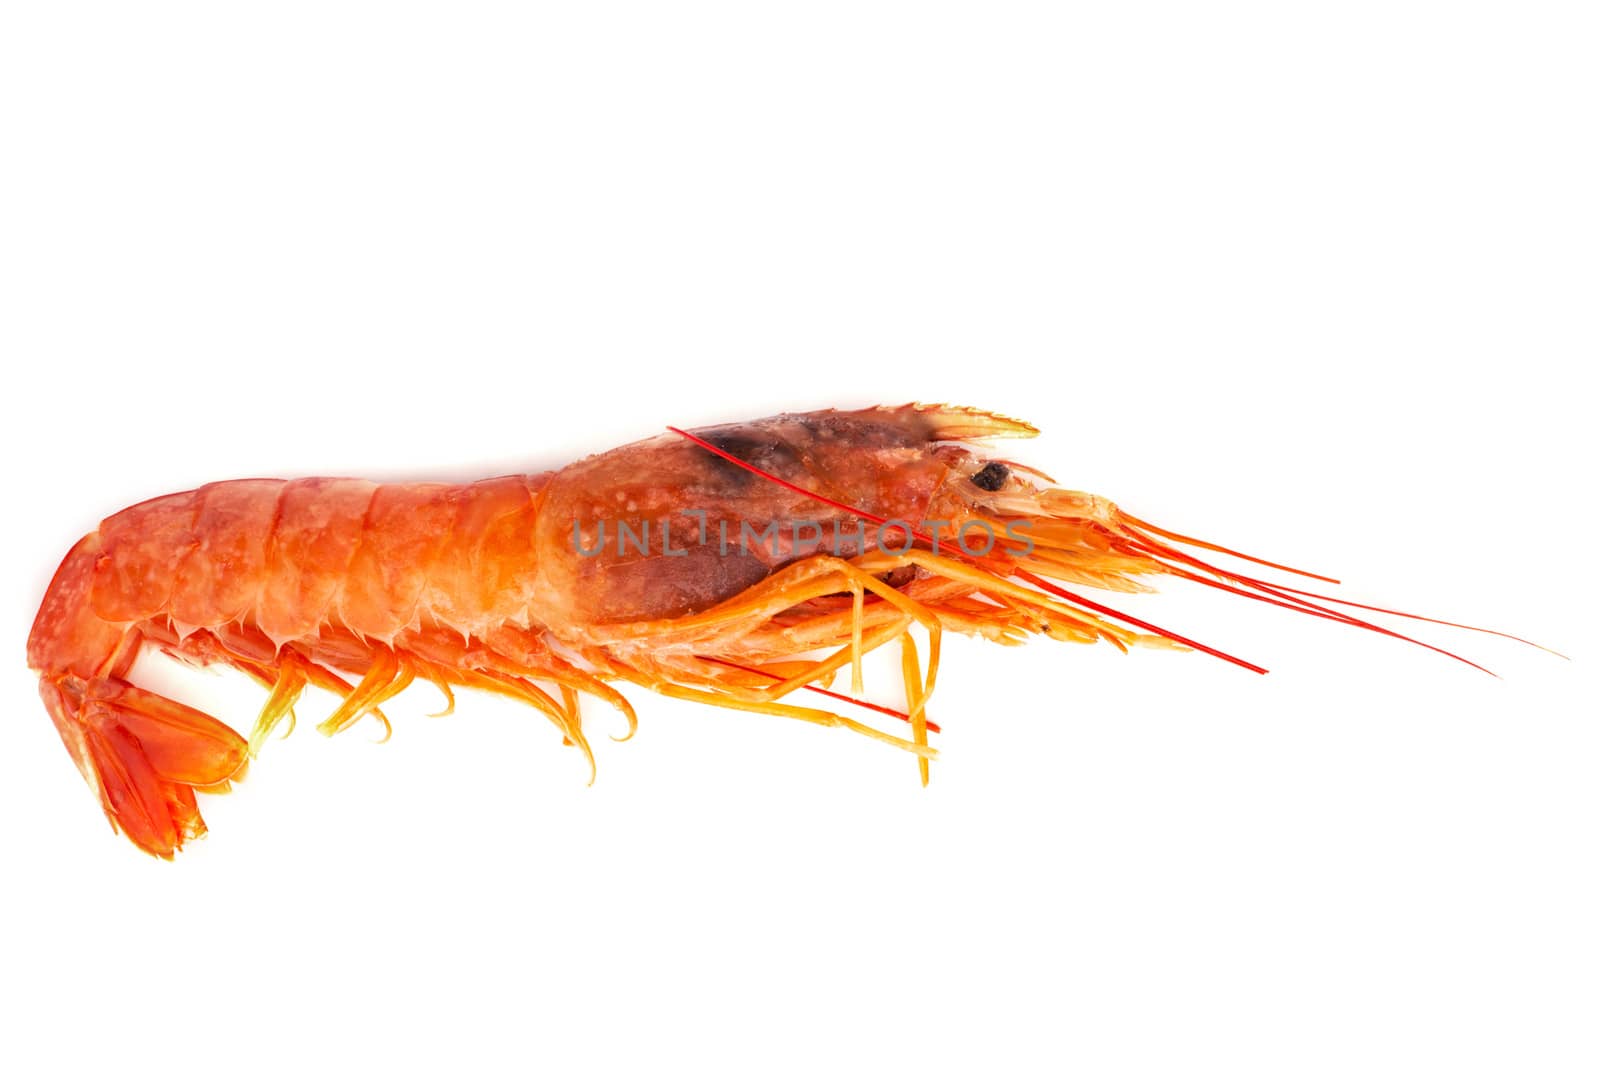 One raw shrimp langostino isolated on white background